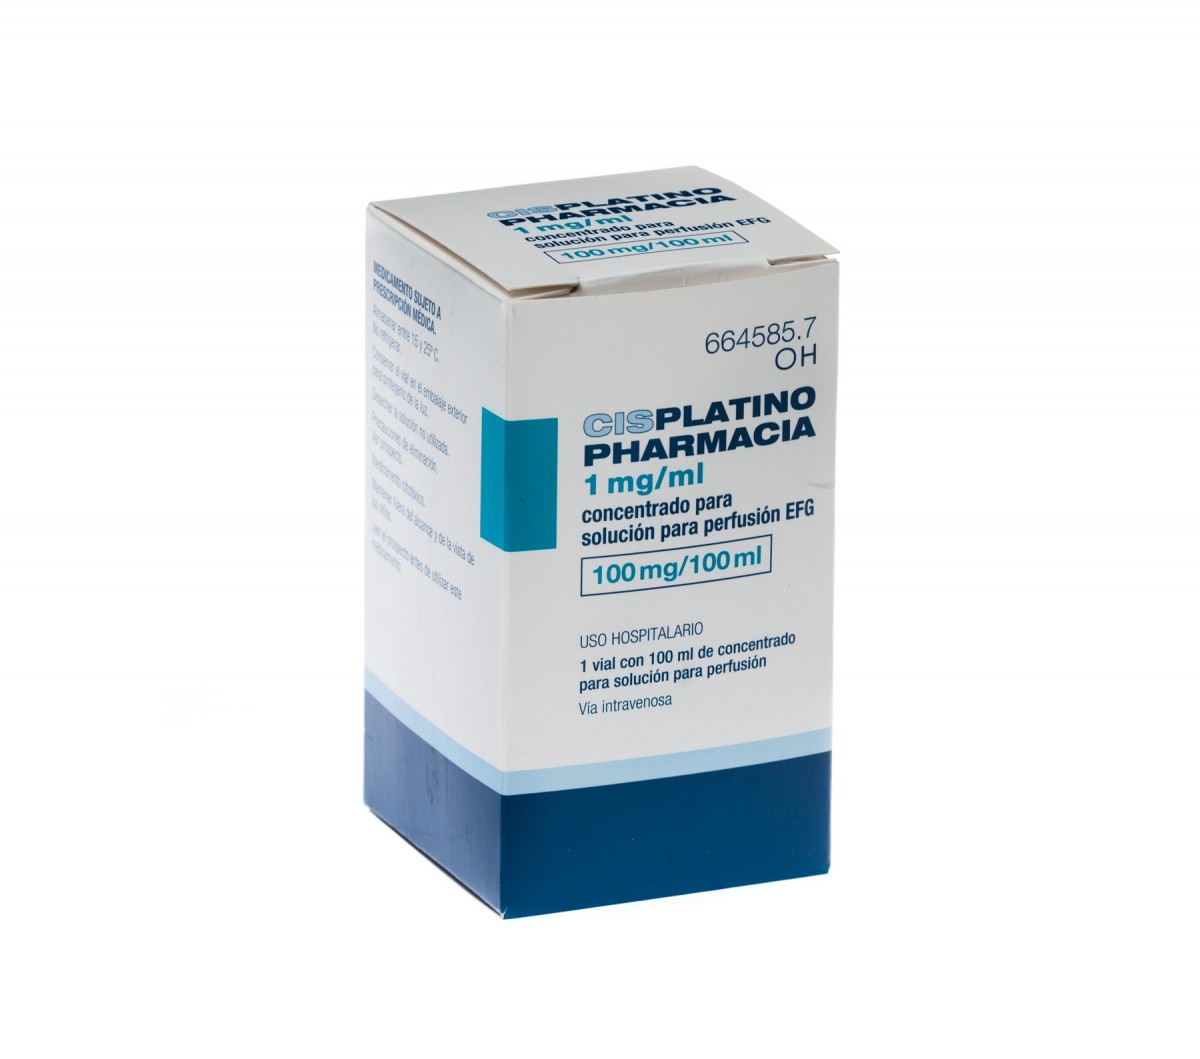 CISPLATINO PHARMACIA 1 mg/ml CONCENTRADO PARA SOLUCION PARA PERFUSION EFG , 1 vial de 10 ml fotografía del envase.